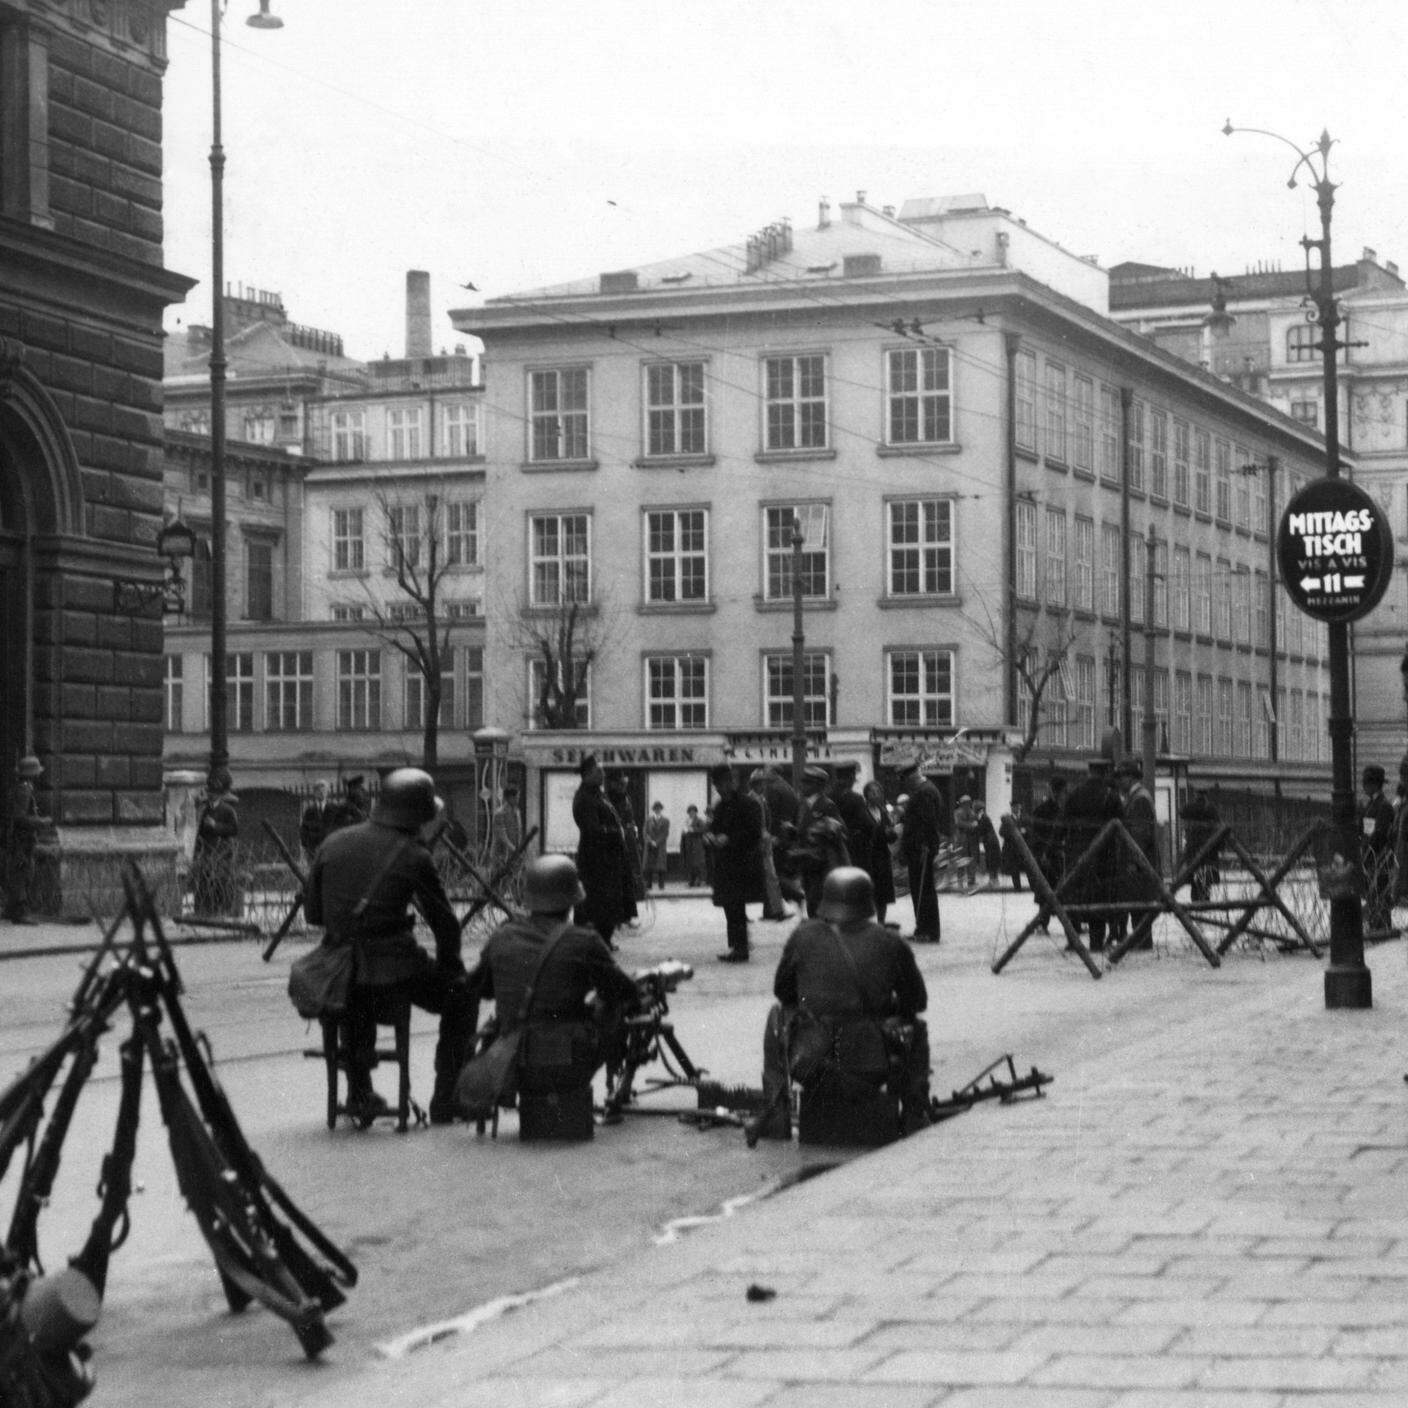 Una scena per le strade di Vienna, soldati austriaci che barricavano una delle strade con filo spinato durante l'insurrezione del 1933,  UnitedArchives00136192 